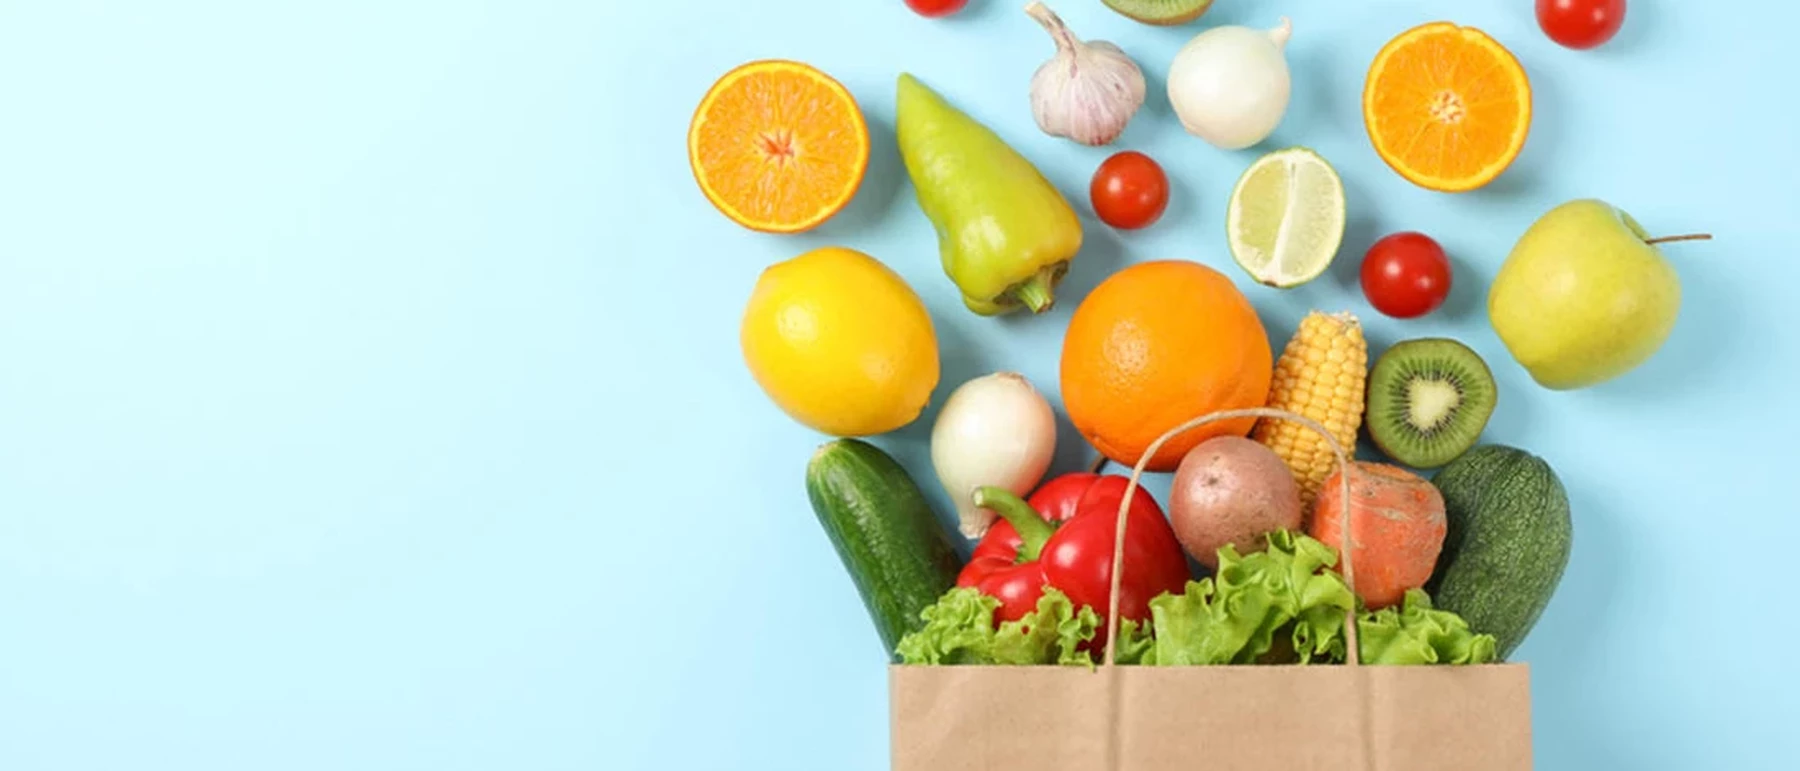 boodschappentas vol groente en fruit